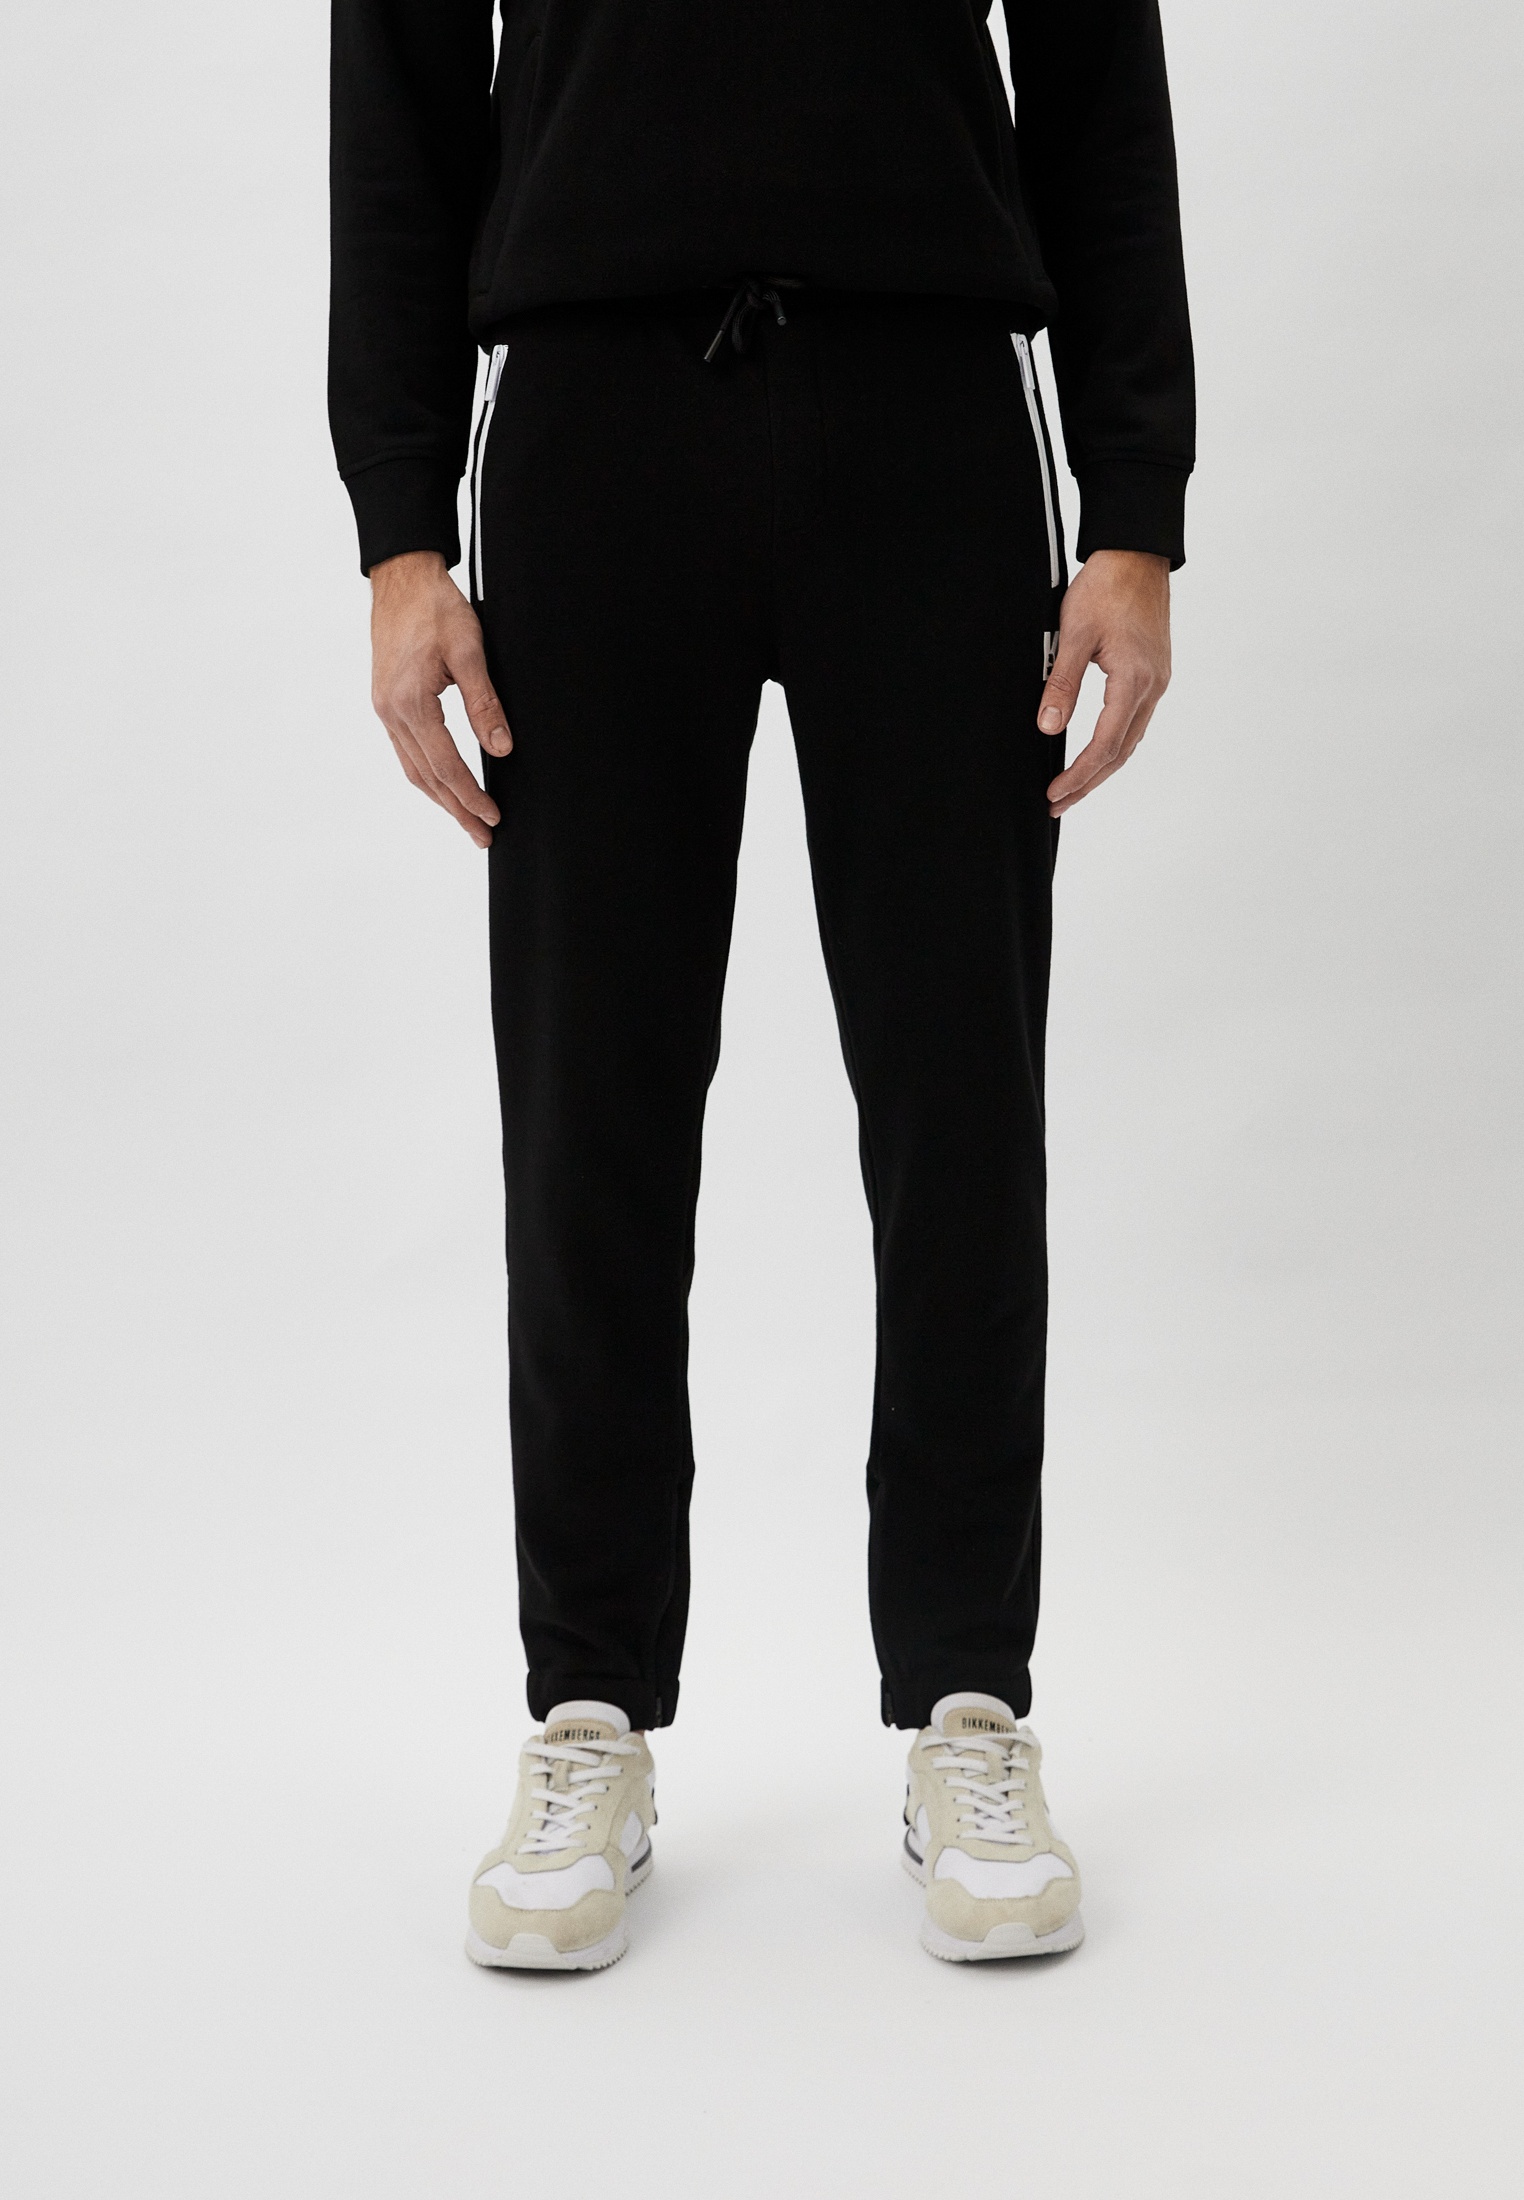 Мужские спортивные брюки Karl Lagerfeld (Карл Лагерфельд) 705073-541900: изображение 1